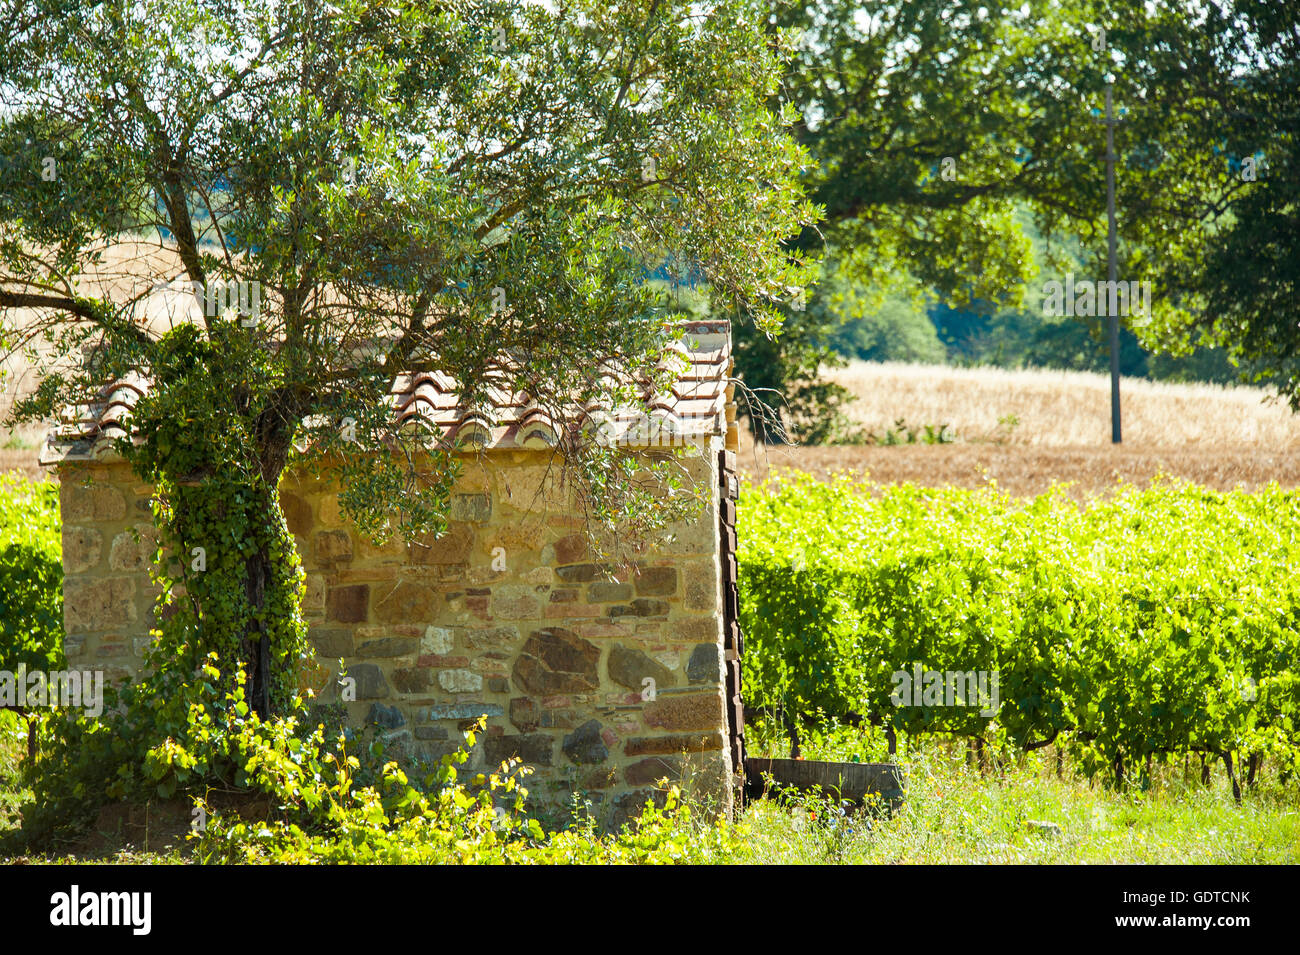 Scène rurale avec vigne et olivier à côté d'une cabane en pierre dans la Toscane, Italie Banque D'Images